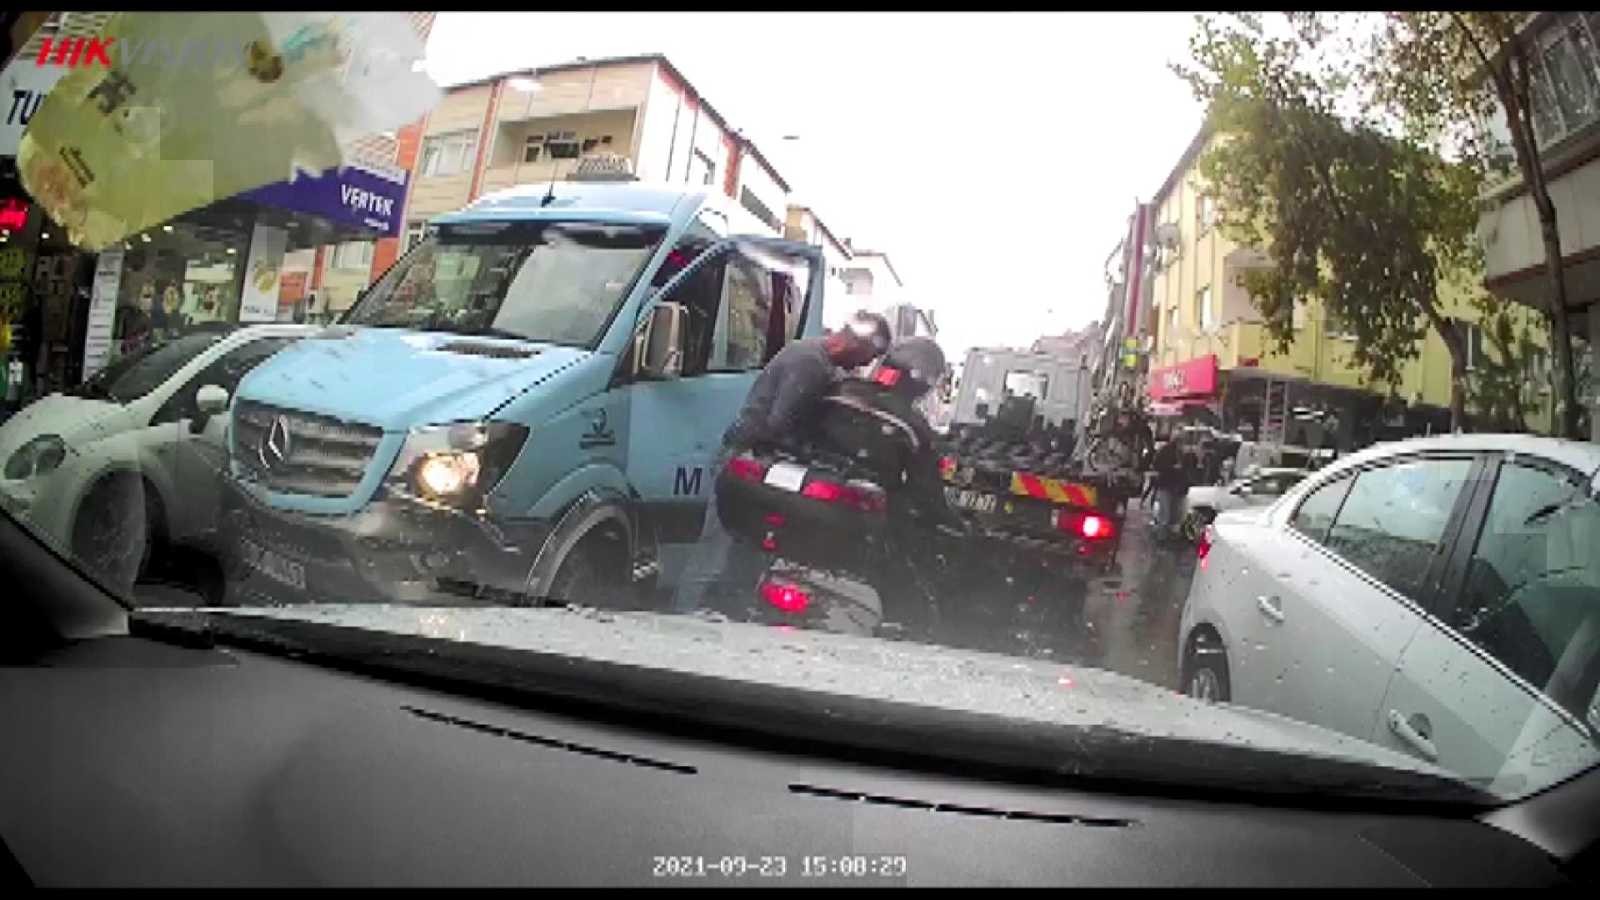 (Özel) Kasklı motosikletliye kafa attı #istanbul